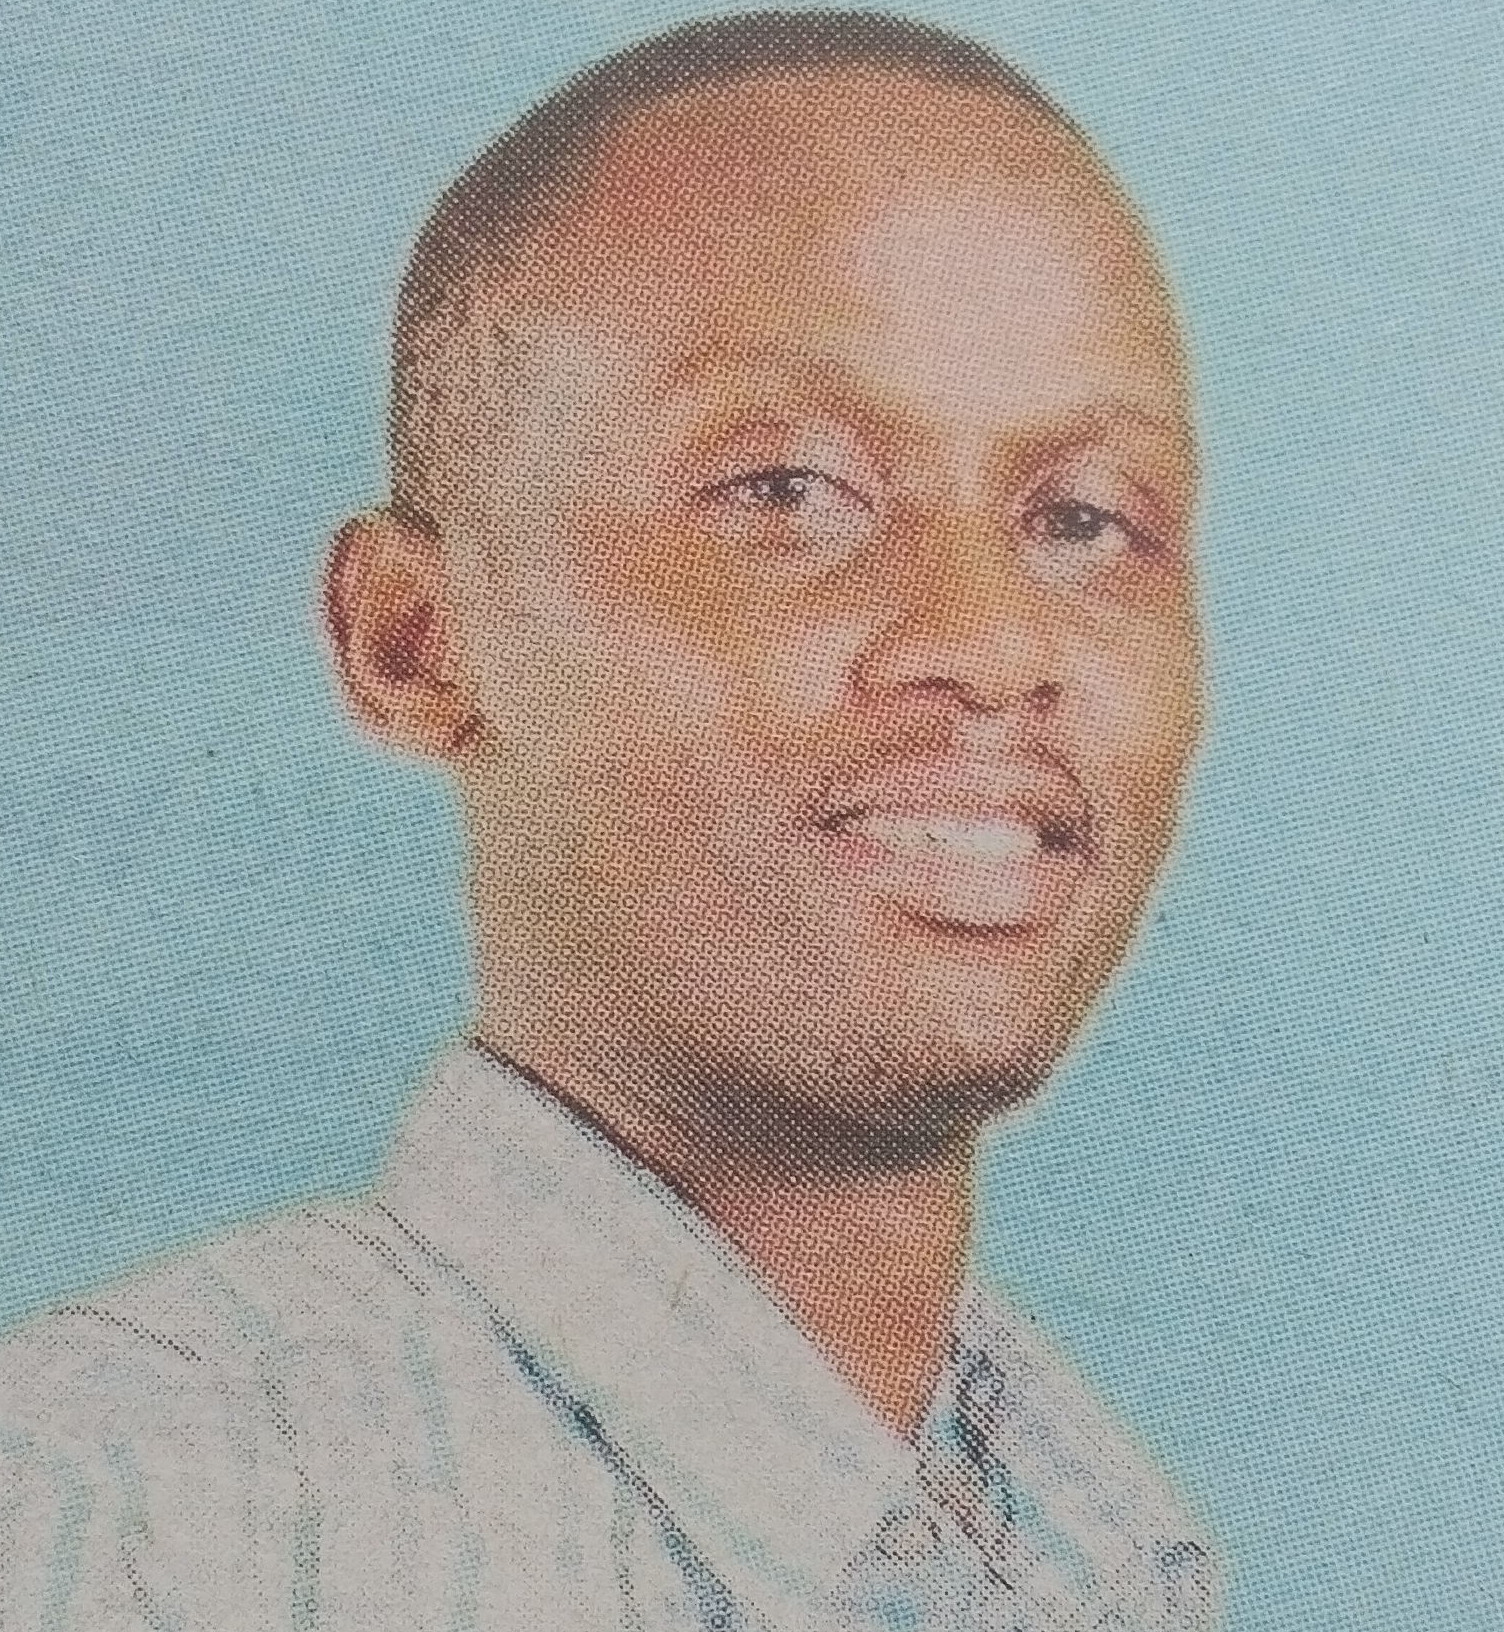 Obituary Image of Benjamin Muli Kimanthi